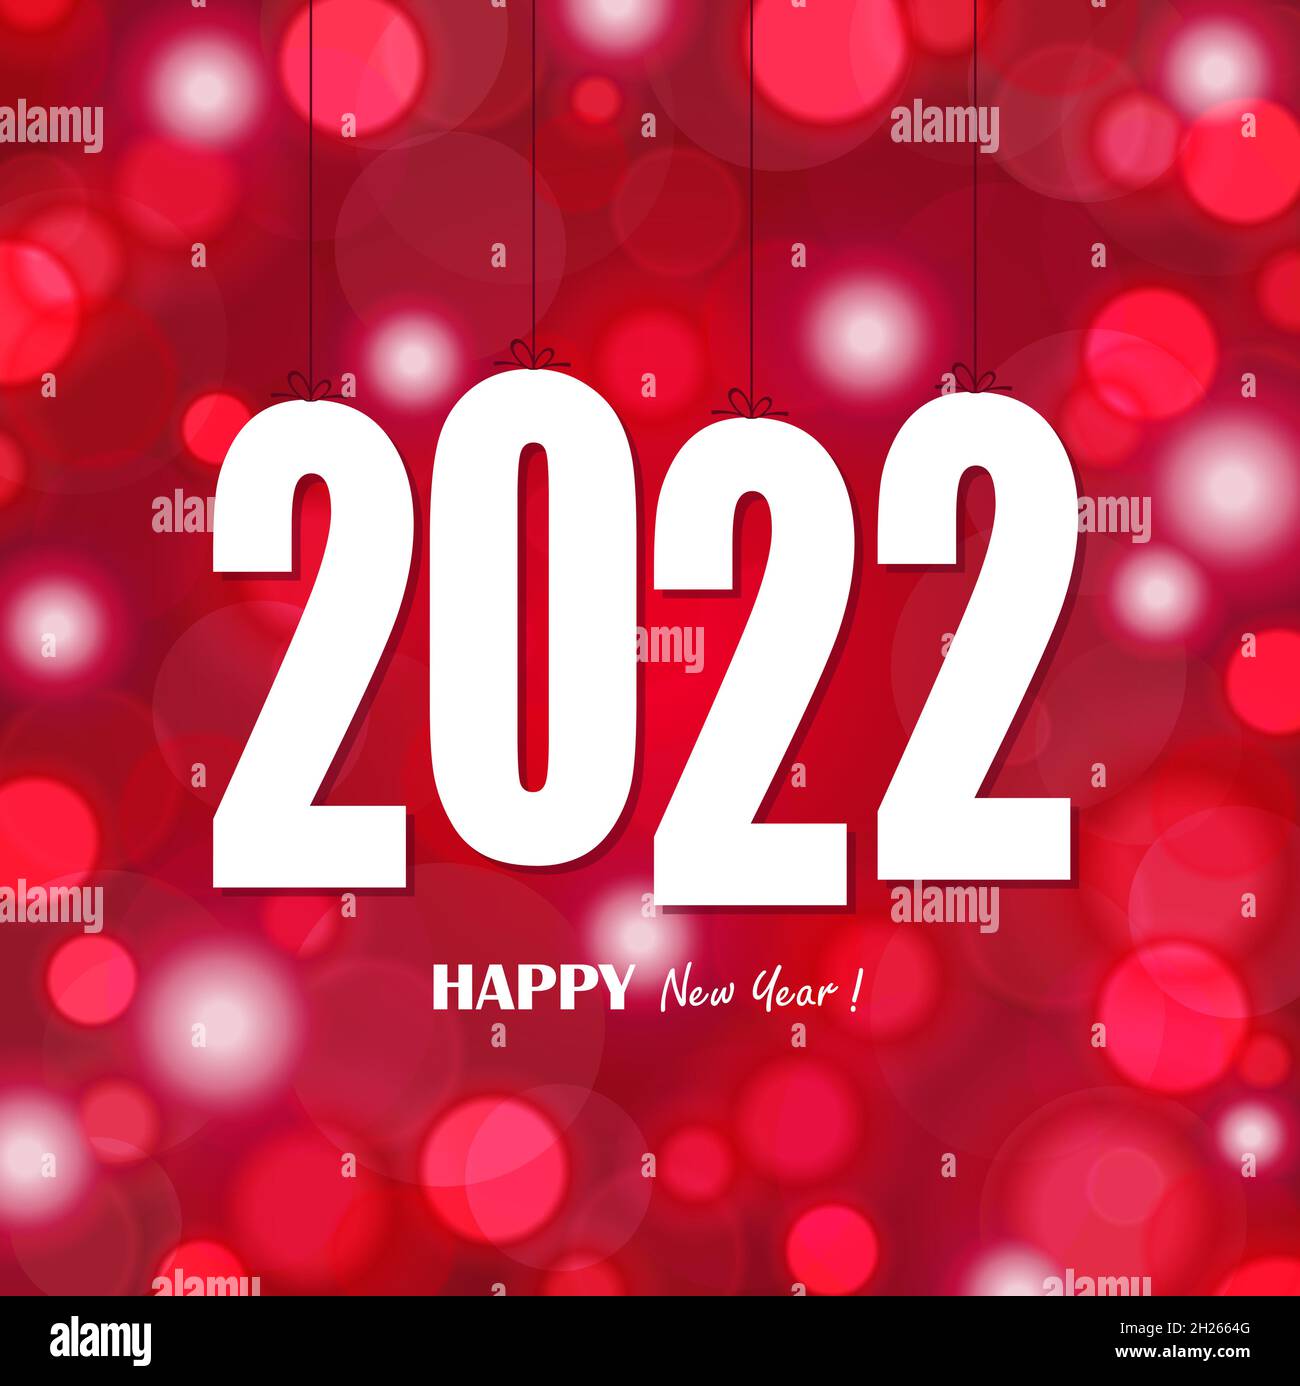 eps-Vektordatei mit weiß gefärbten Tag-Nummern für Neujahr 2022 auf glitzerndem Hintergrund Stock Vektor